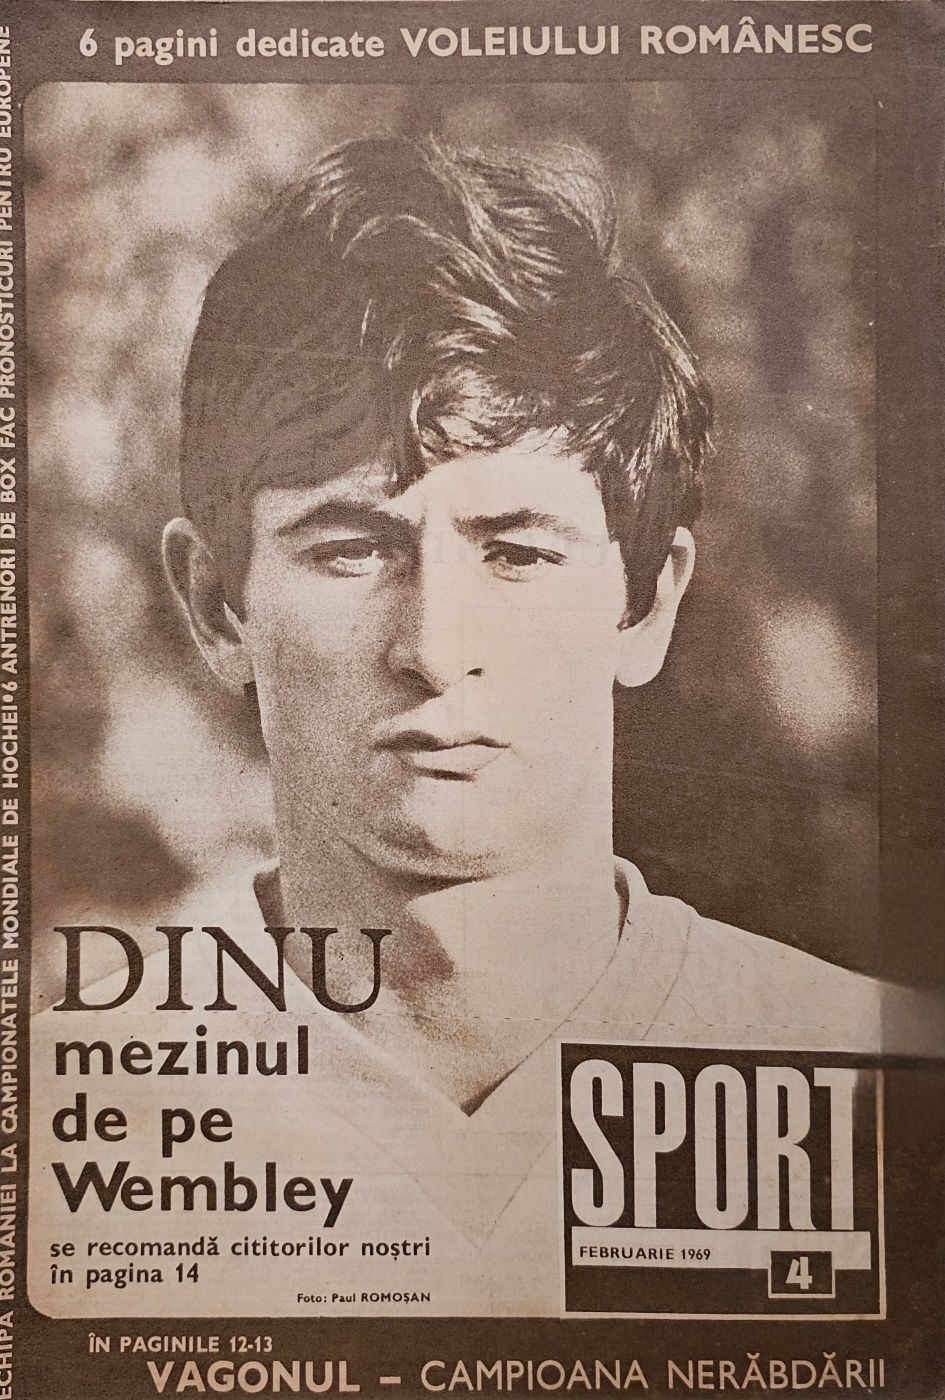 Reviste Sportul, din anii '60 și '70